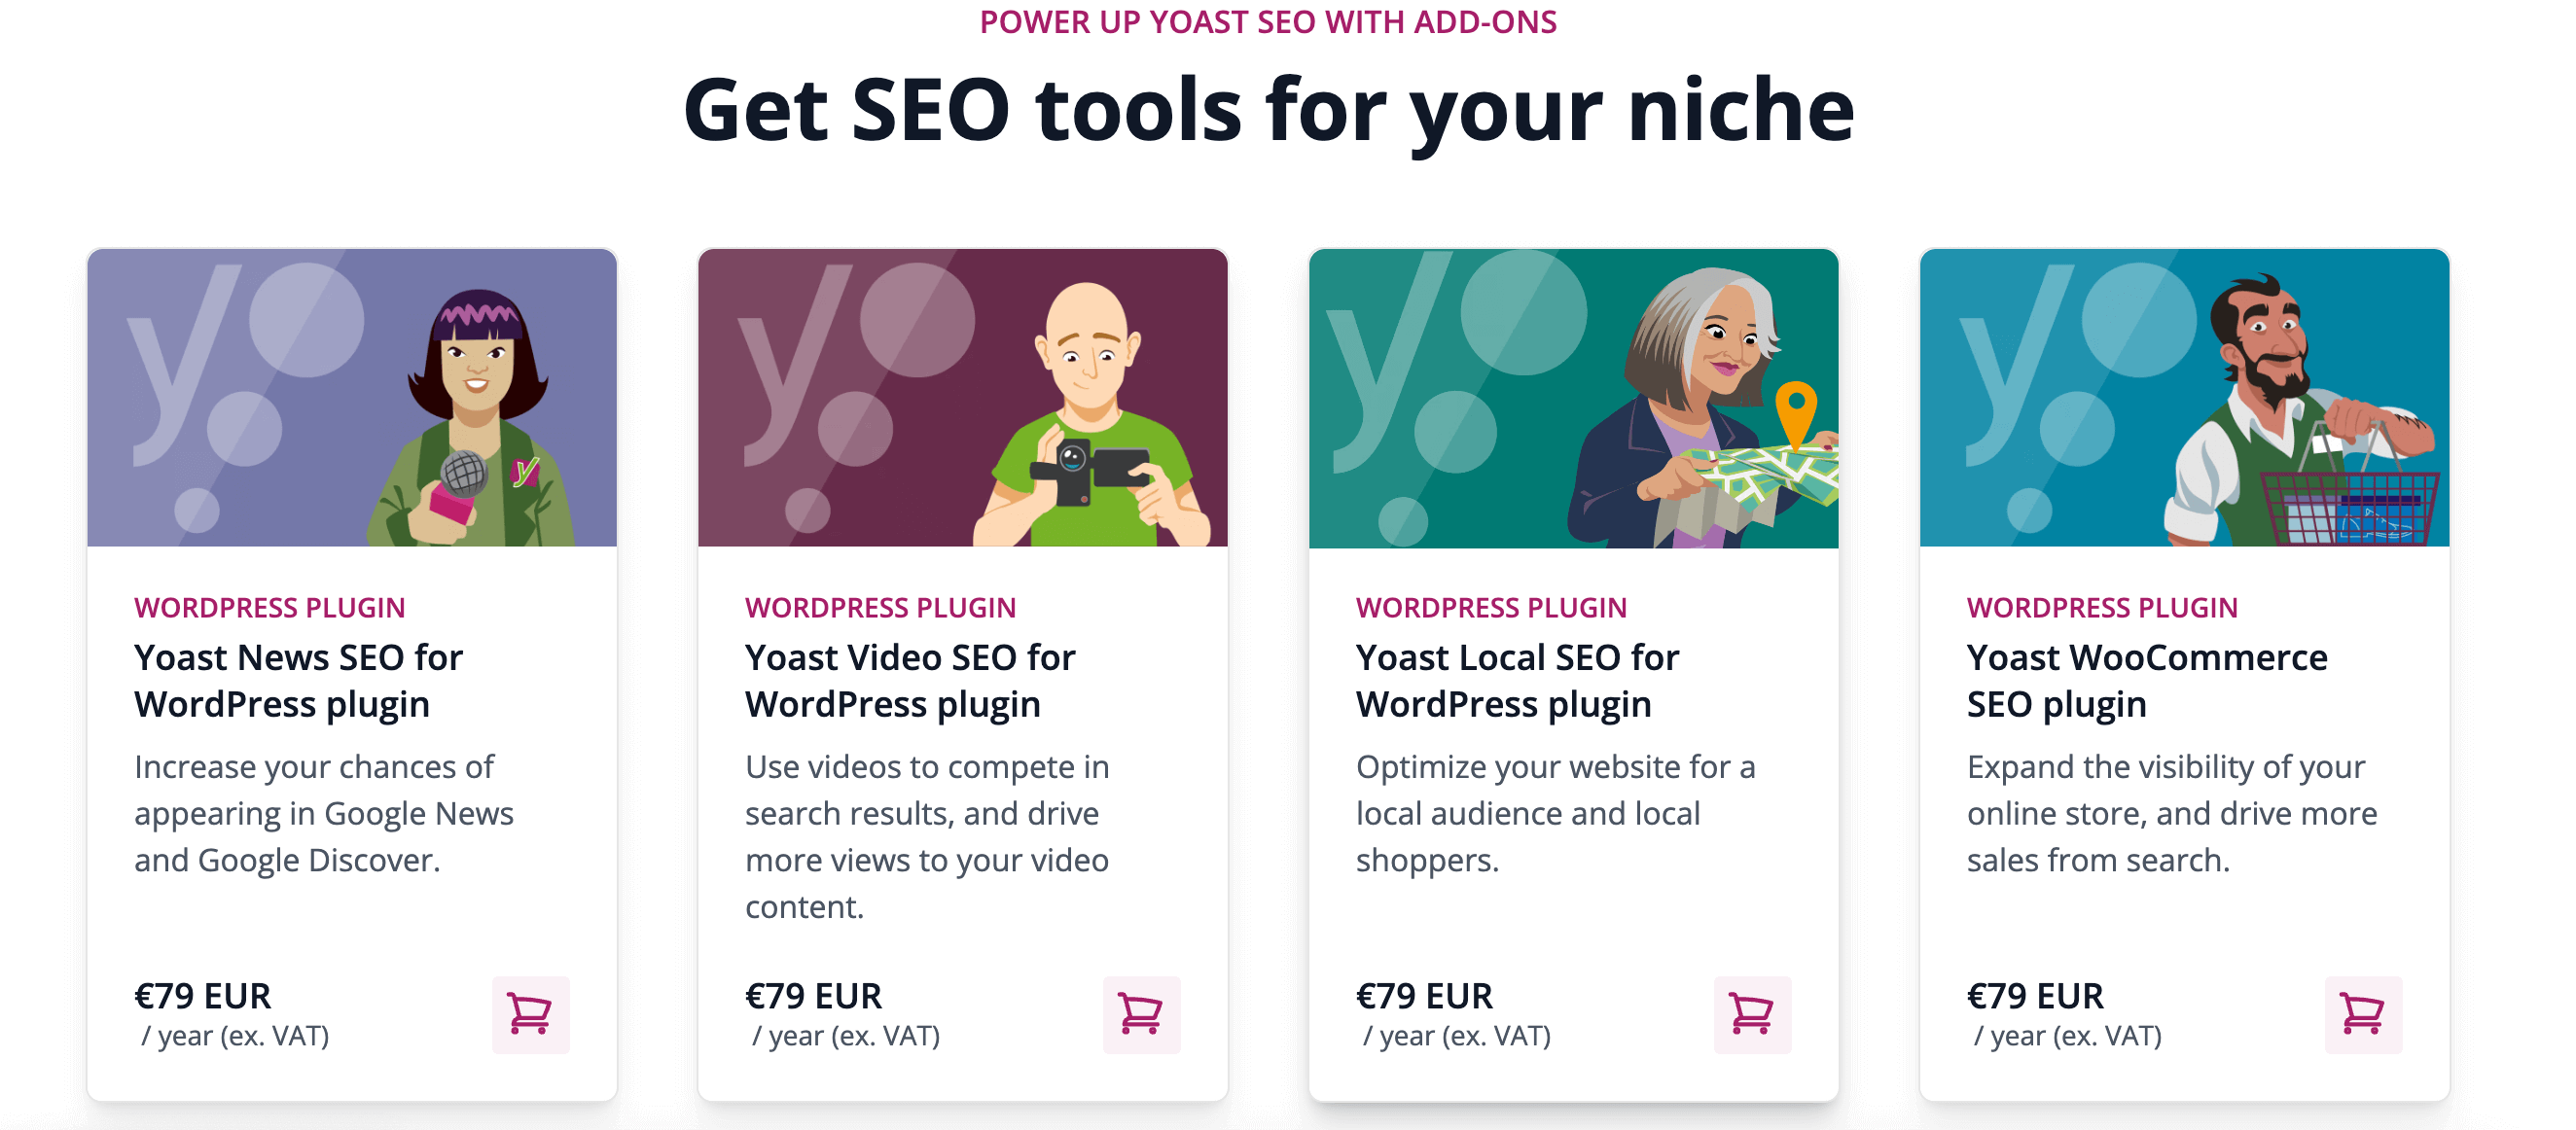 Preise-Seite von Yoast-SEO für verschiedene Anwendungsarten wie WooCommerce oder WordPress